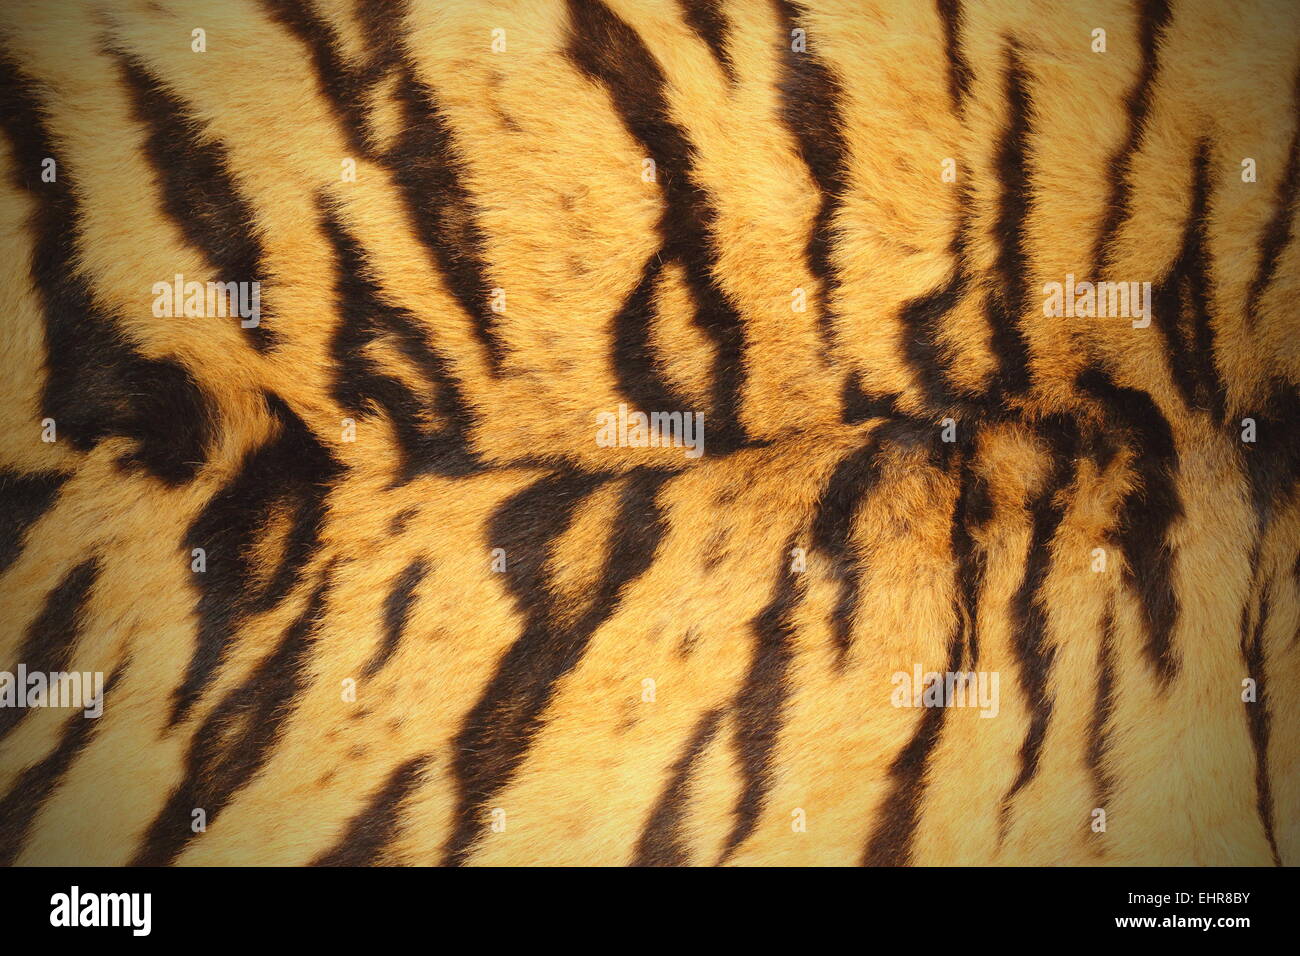 schöne strukturierte Tiger Fell (Lenden Bereich) mit vignette Stockfoto